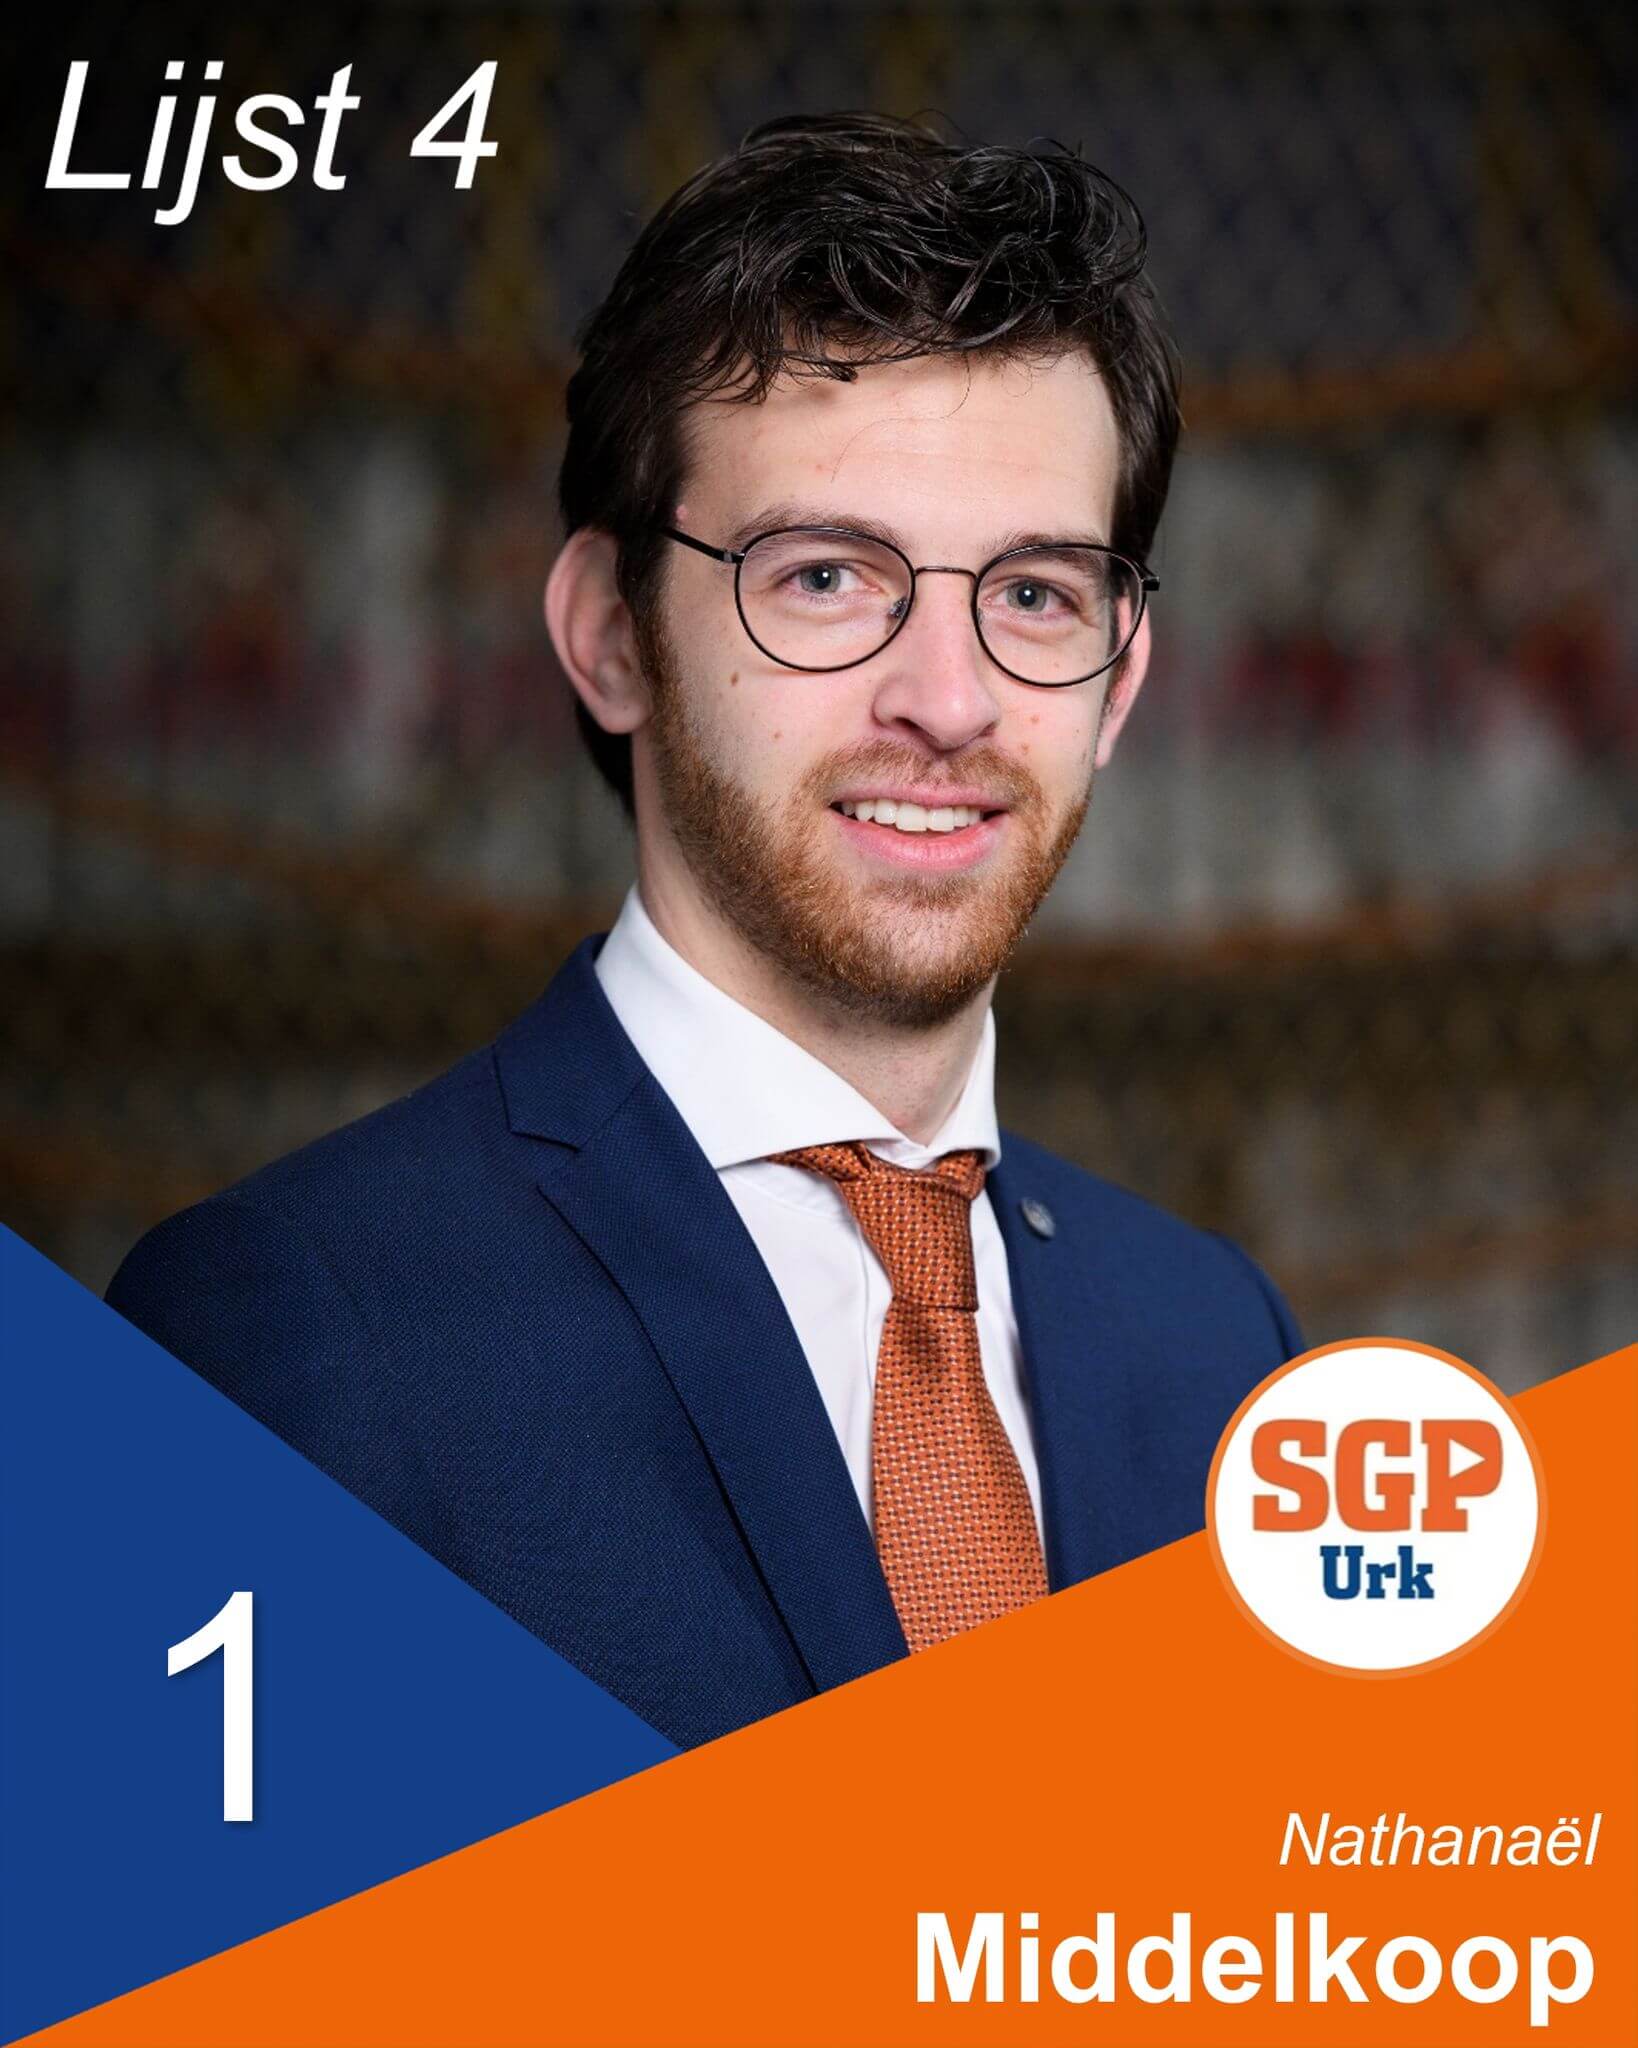 Nathanaël Middelkoop - SGP Urk - Lijst 4 nummer 1